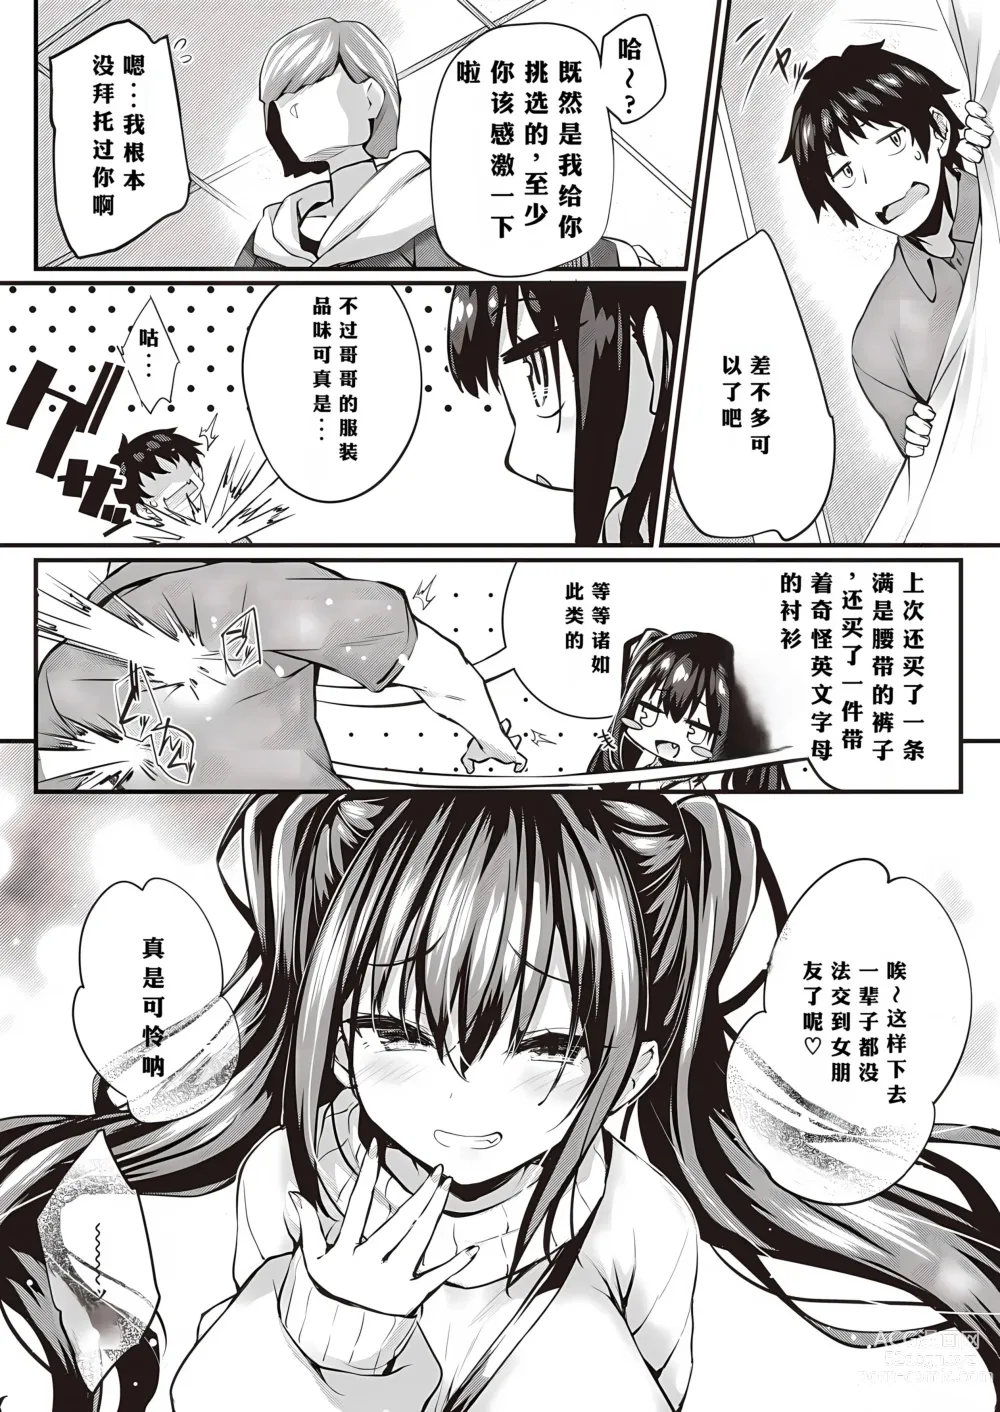 Page 18 of manga Oshiete Ageru + Motto Oshiete Ageru